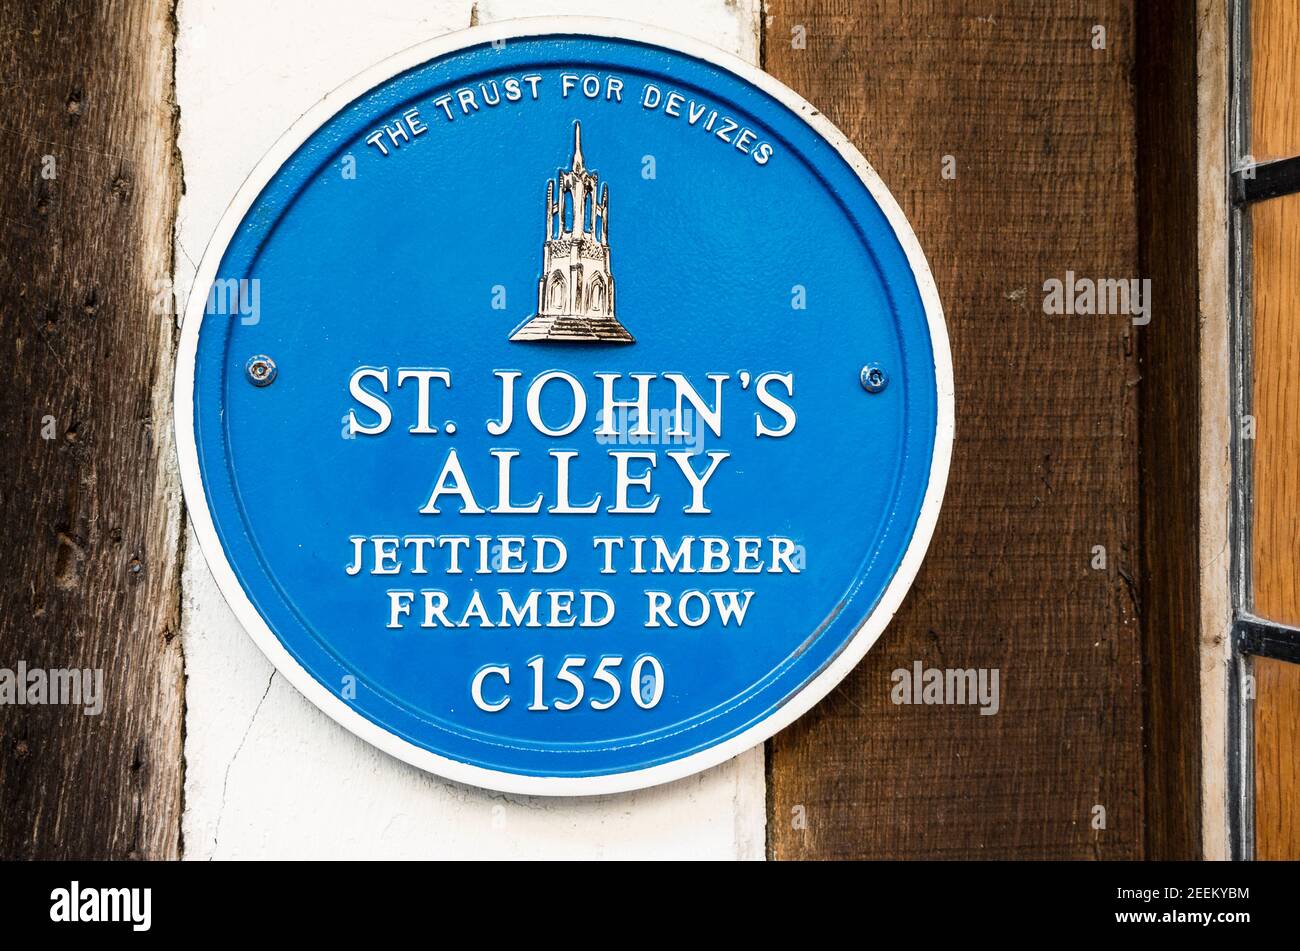 Placa azul proporcionada por el Trust for Devizes grabación de la Historia temprana de algunos edificios históricos en St James's Alley Devizes Wiltshire Inglaterra Reino Unido Foto de stock